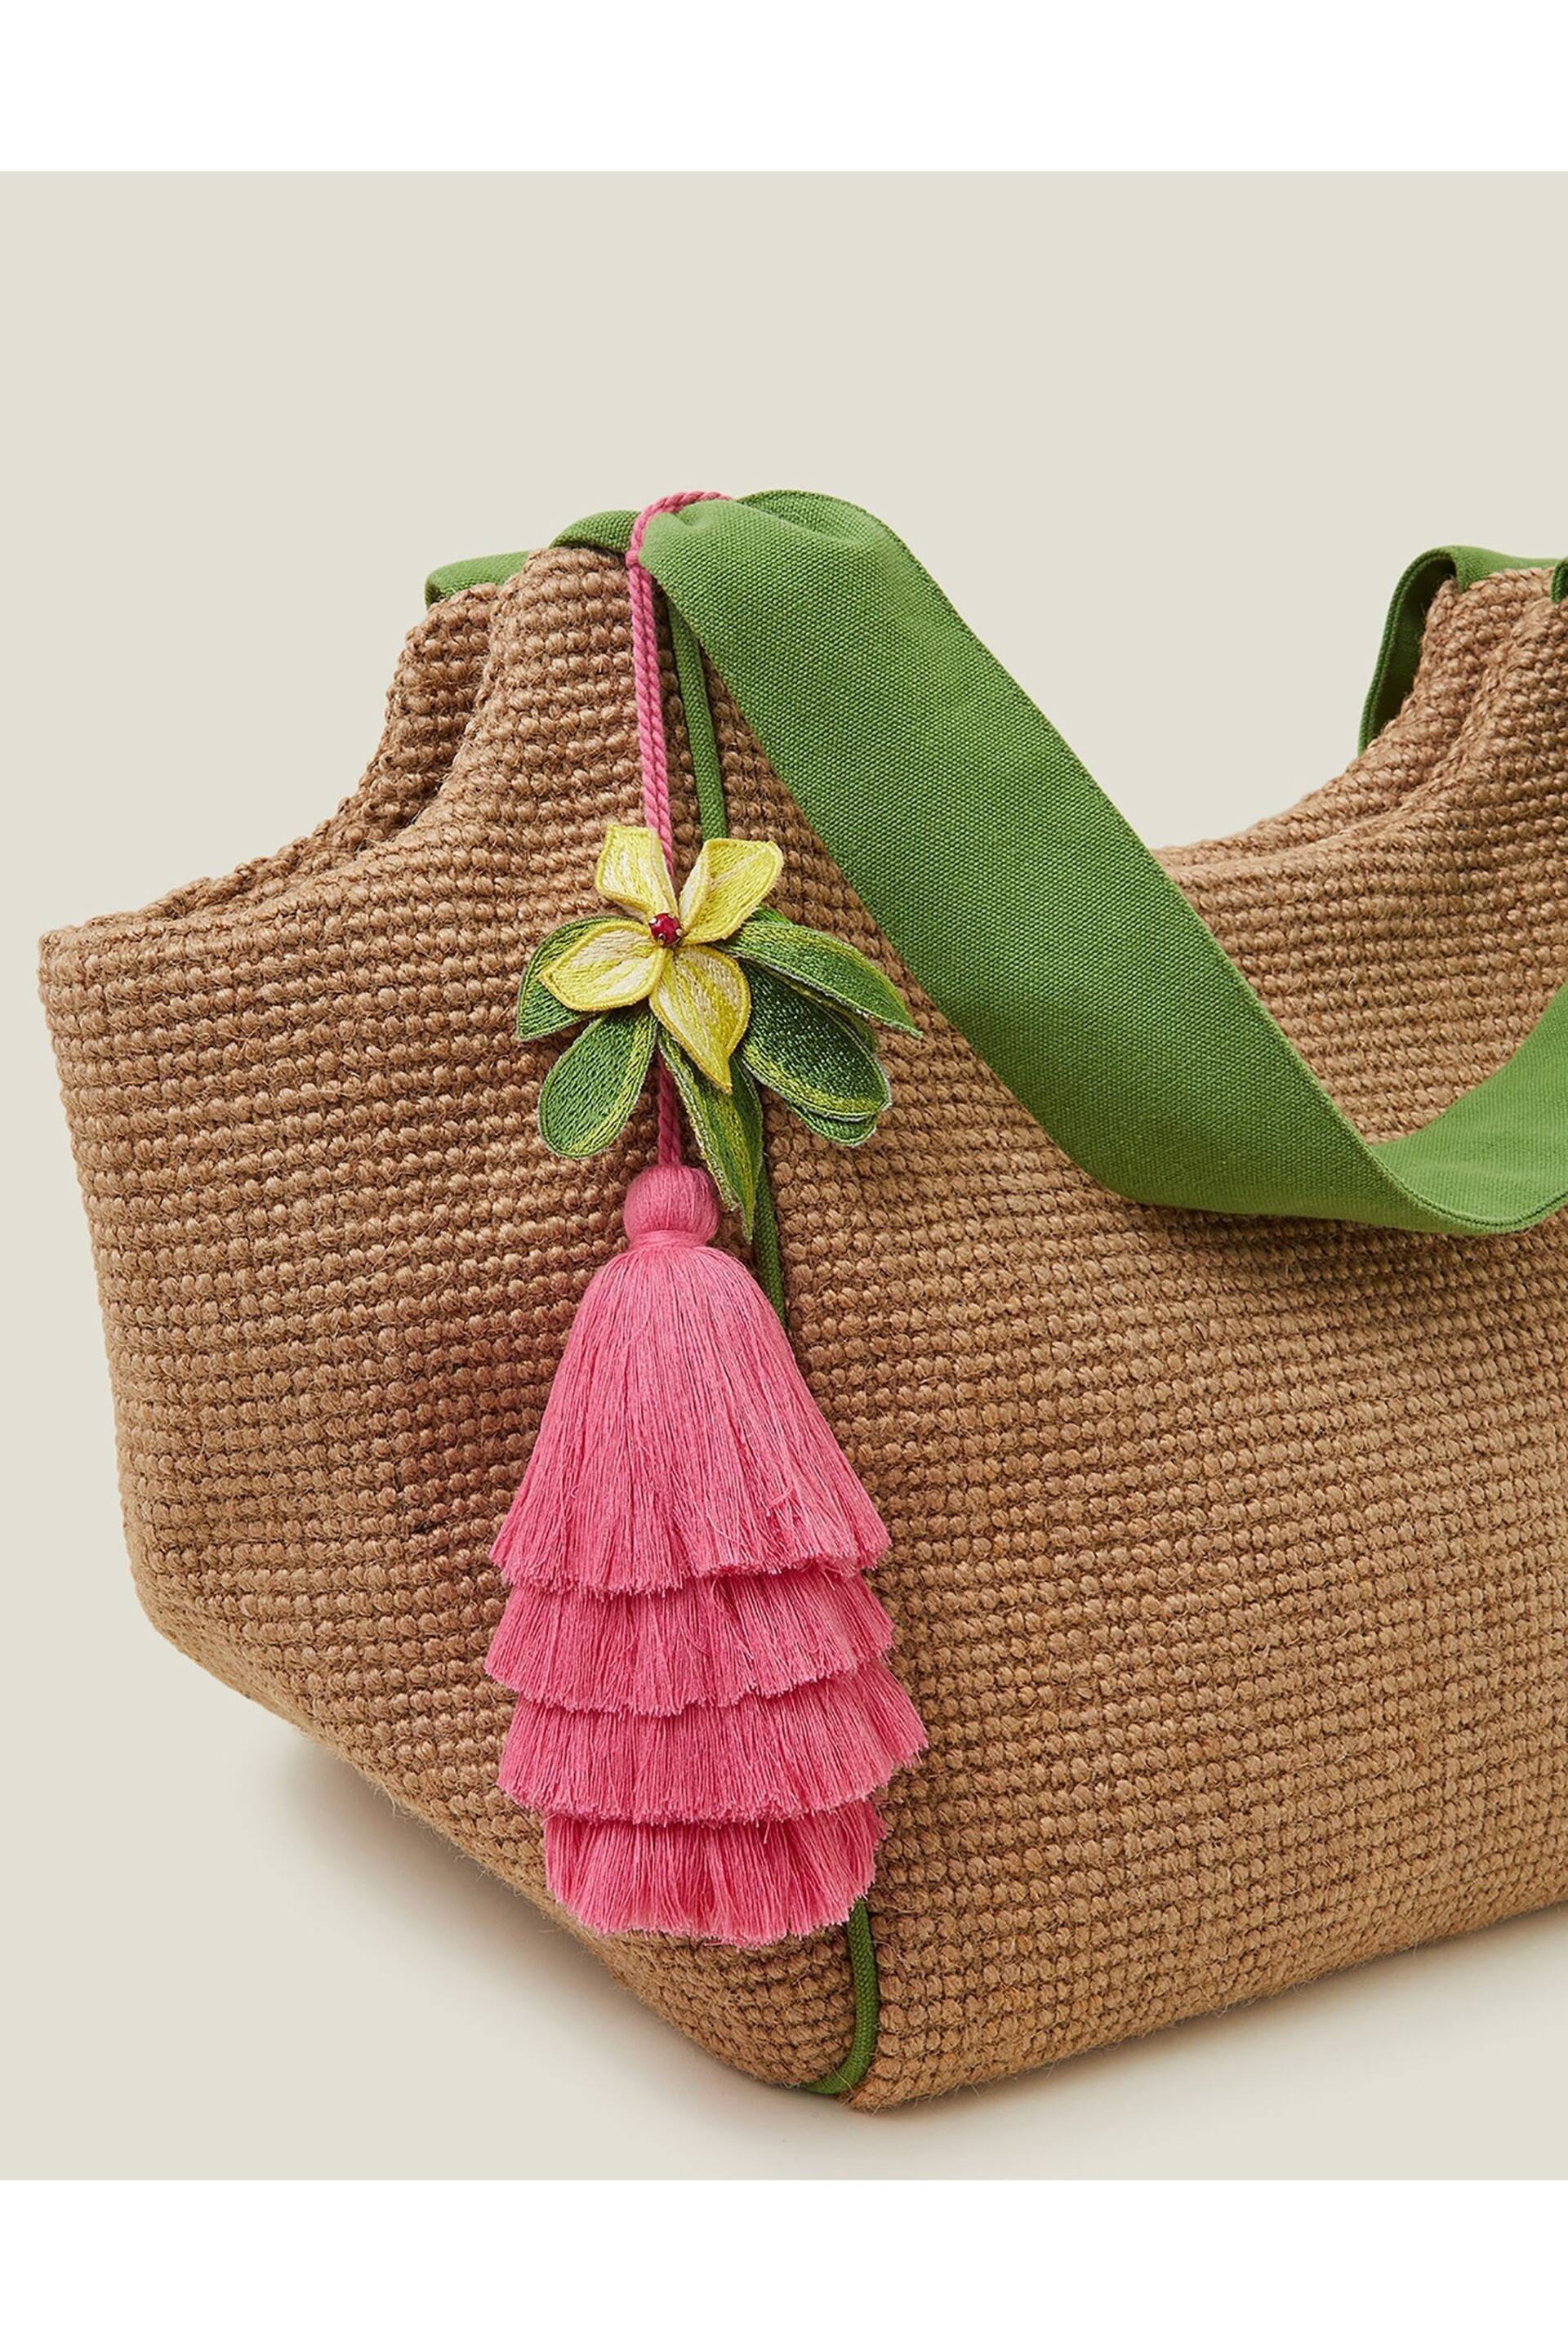 Accessorize Natural Floral Tassel Jute Shopper Bag - Image 4 of 4